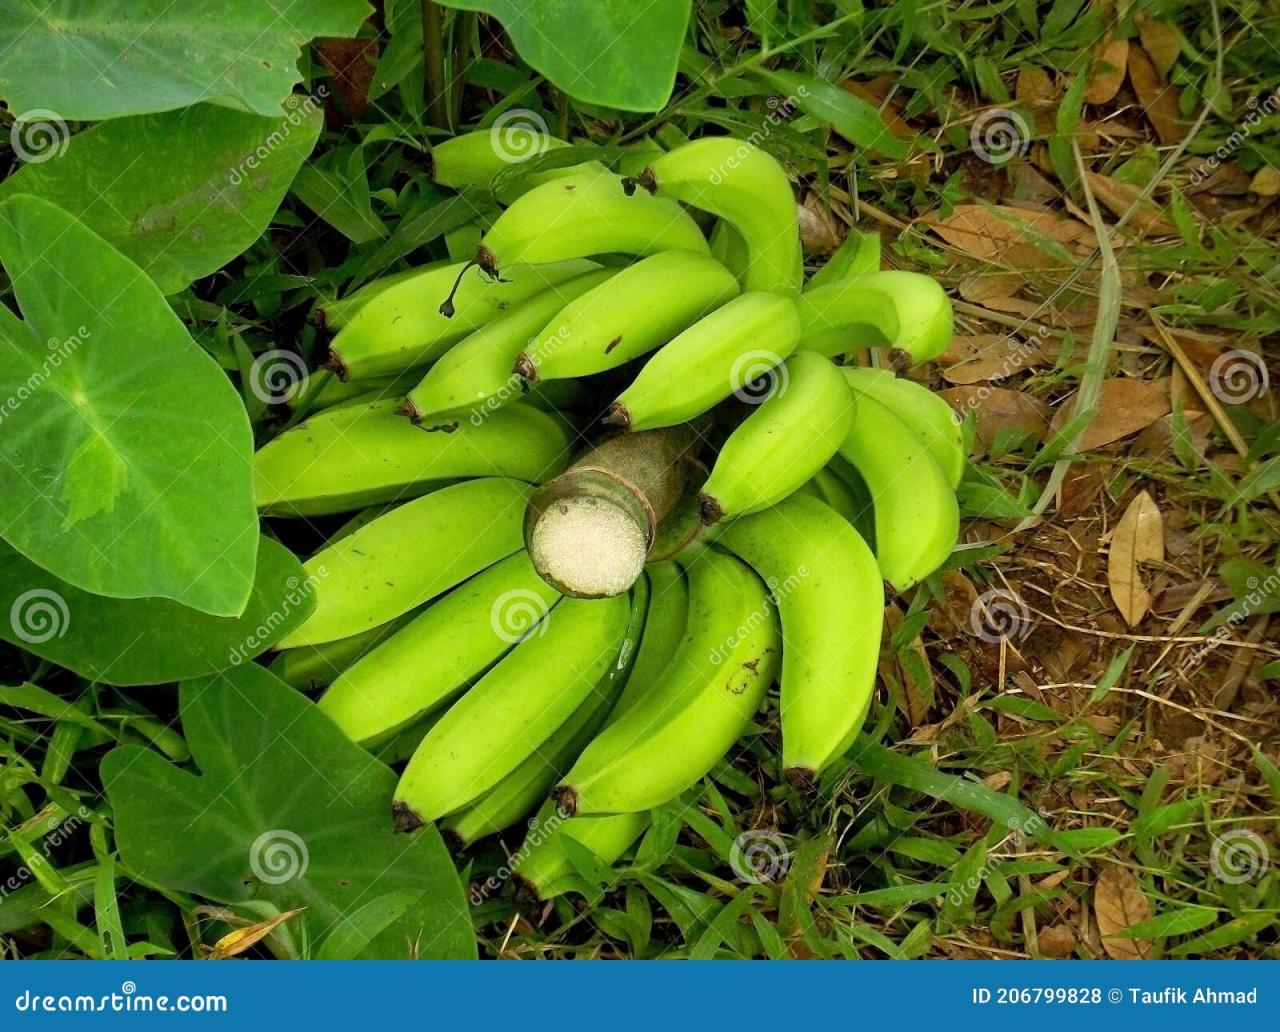 Bananas bannana visit